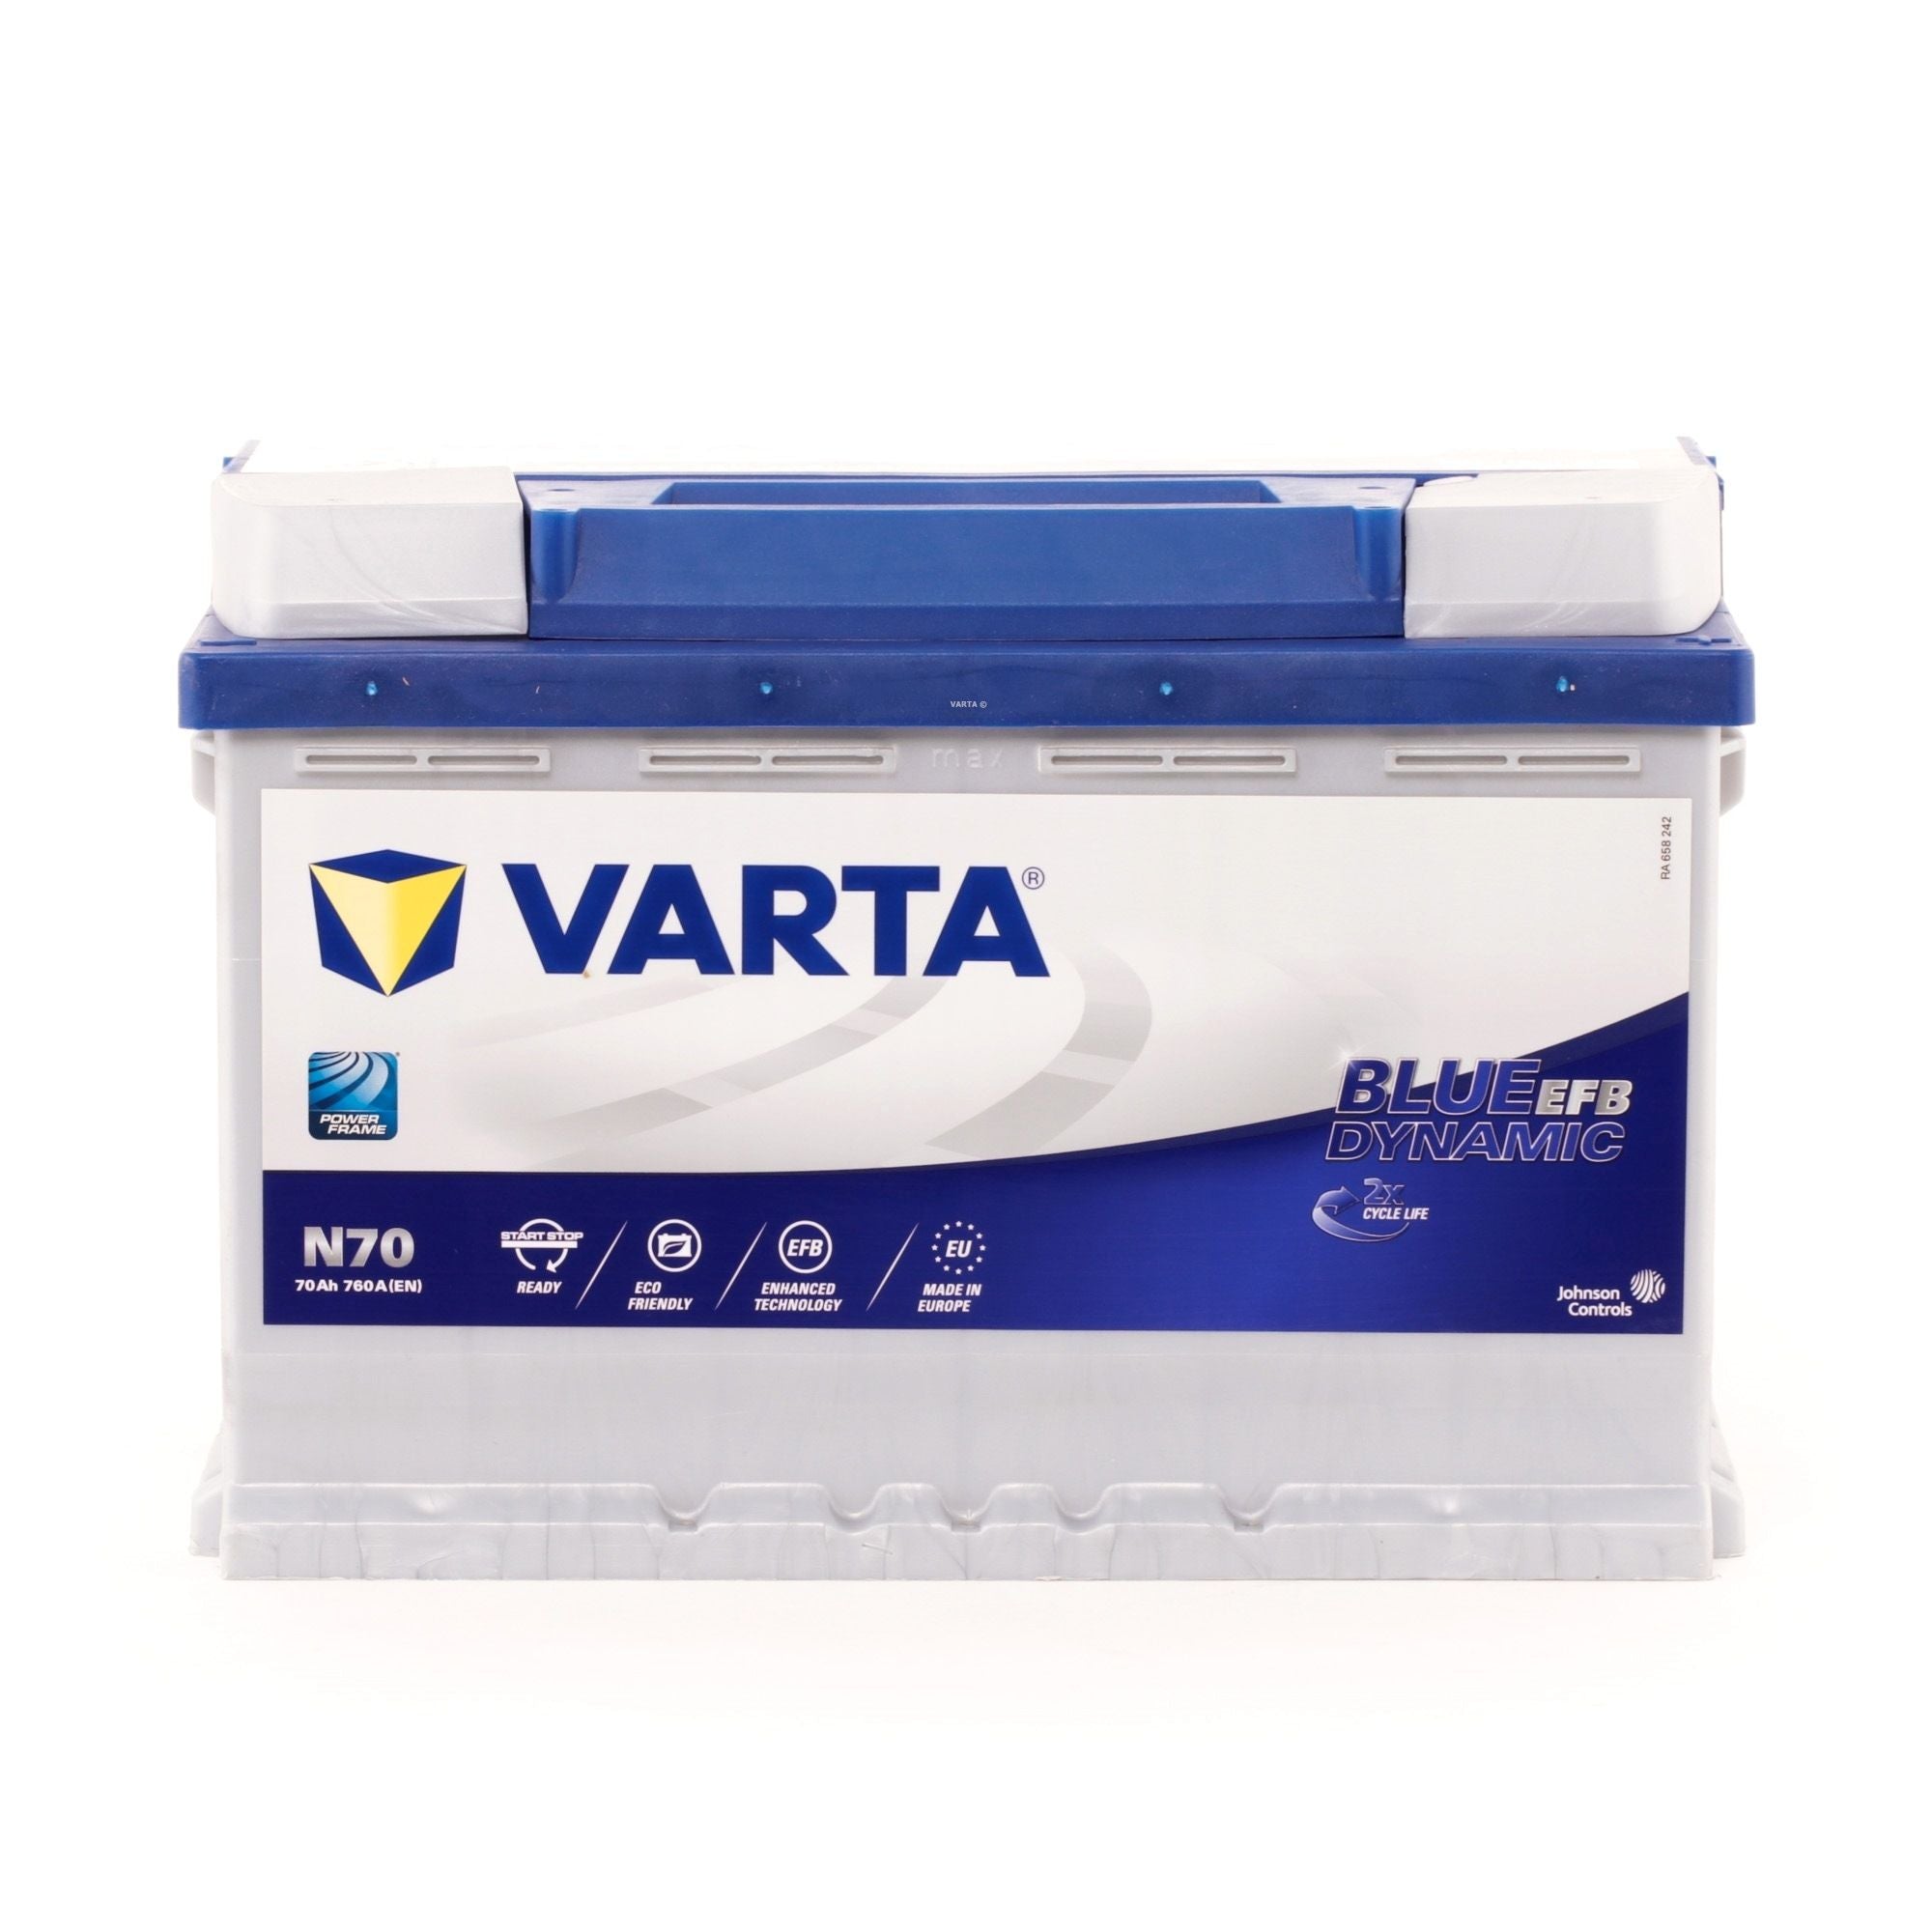 Varta Batteria Auto 70Ah EN 760A 12V 570500076 – BL RICAMBI